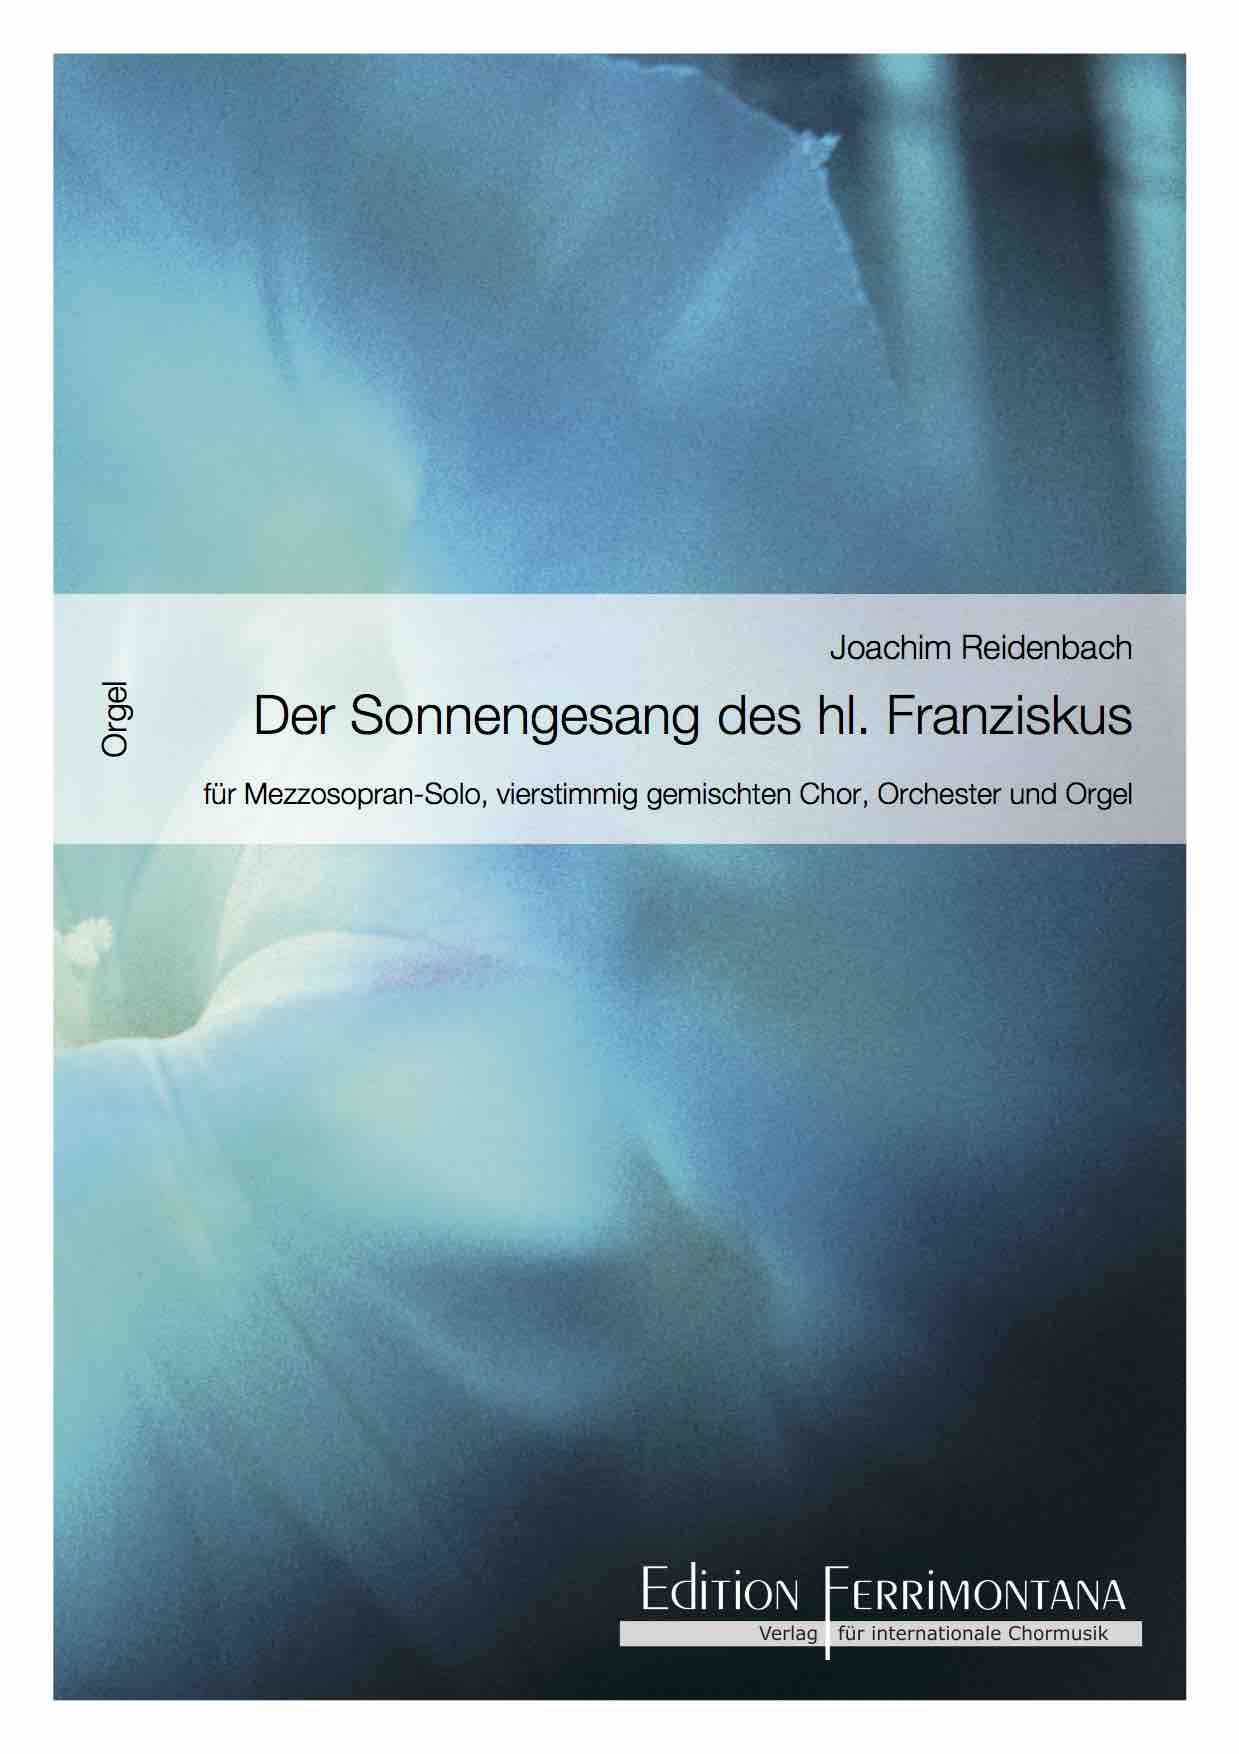 Reidenbach: Der Sonnengesang des heiligen Franziskus - Orgel